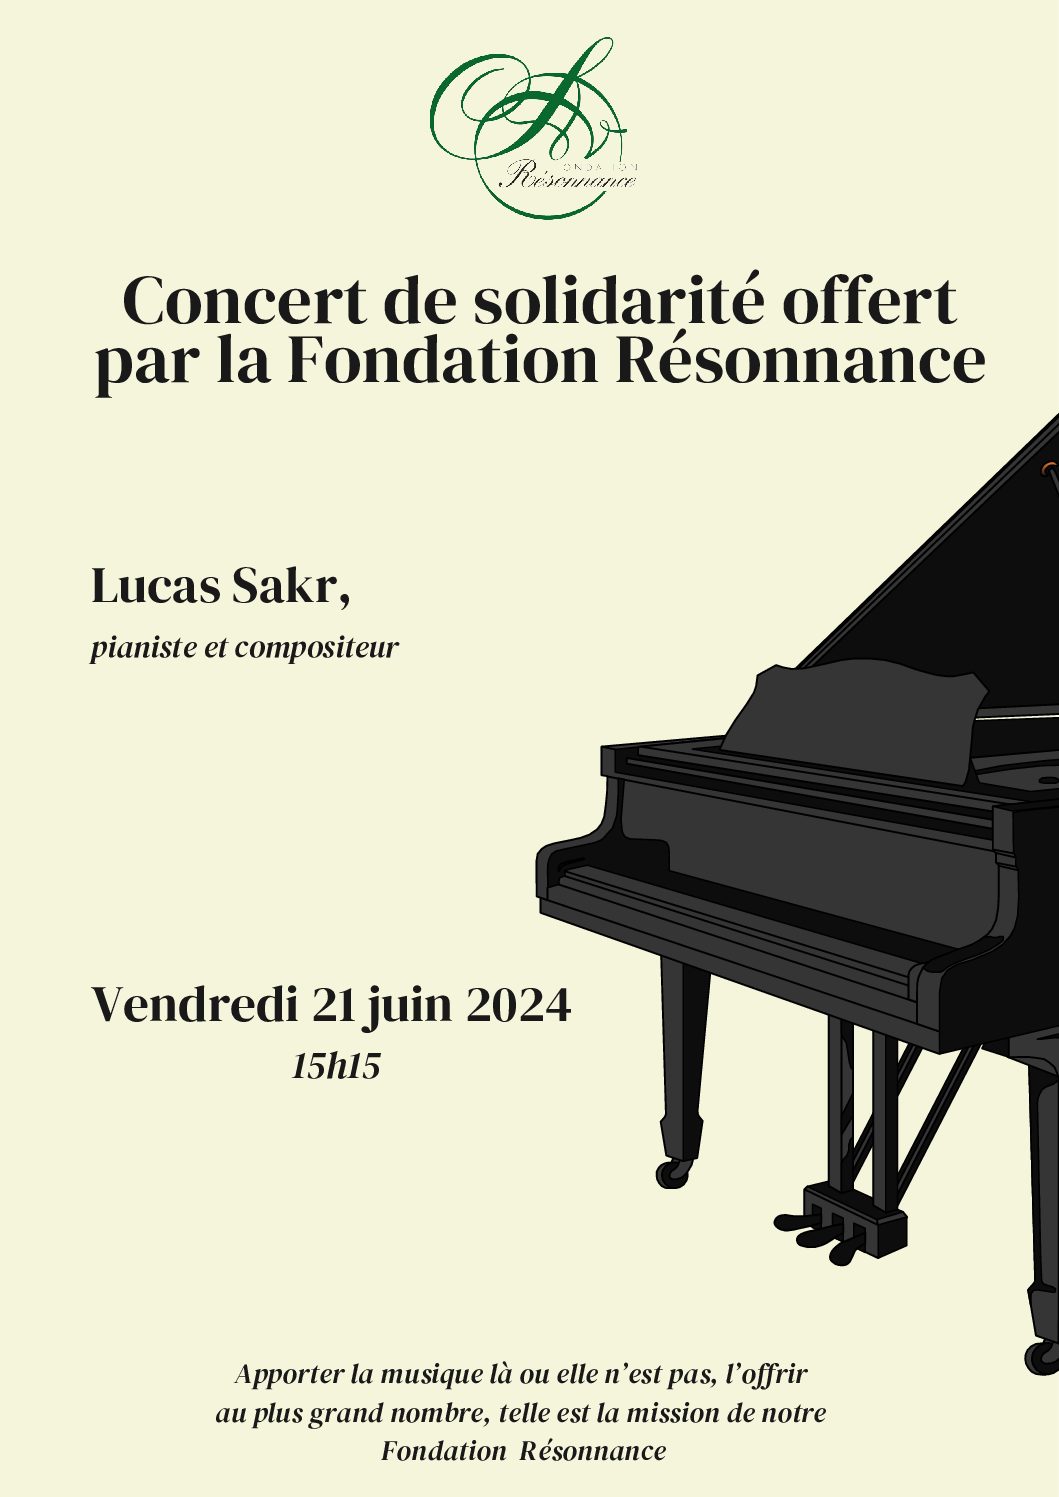 Concert de solidarité - EMS "nelty de Beausobre" - Récital de Lucas Sakr